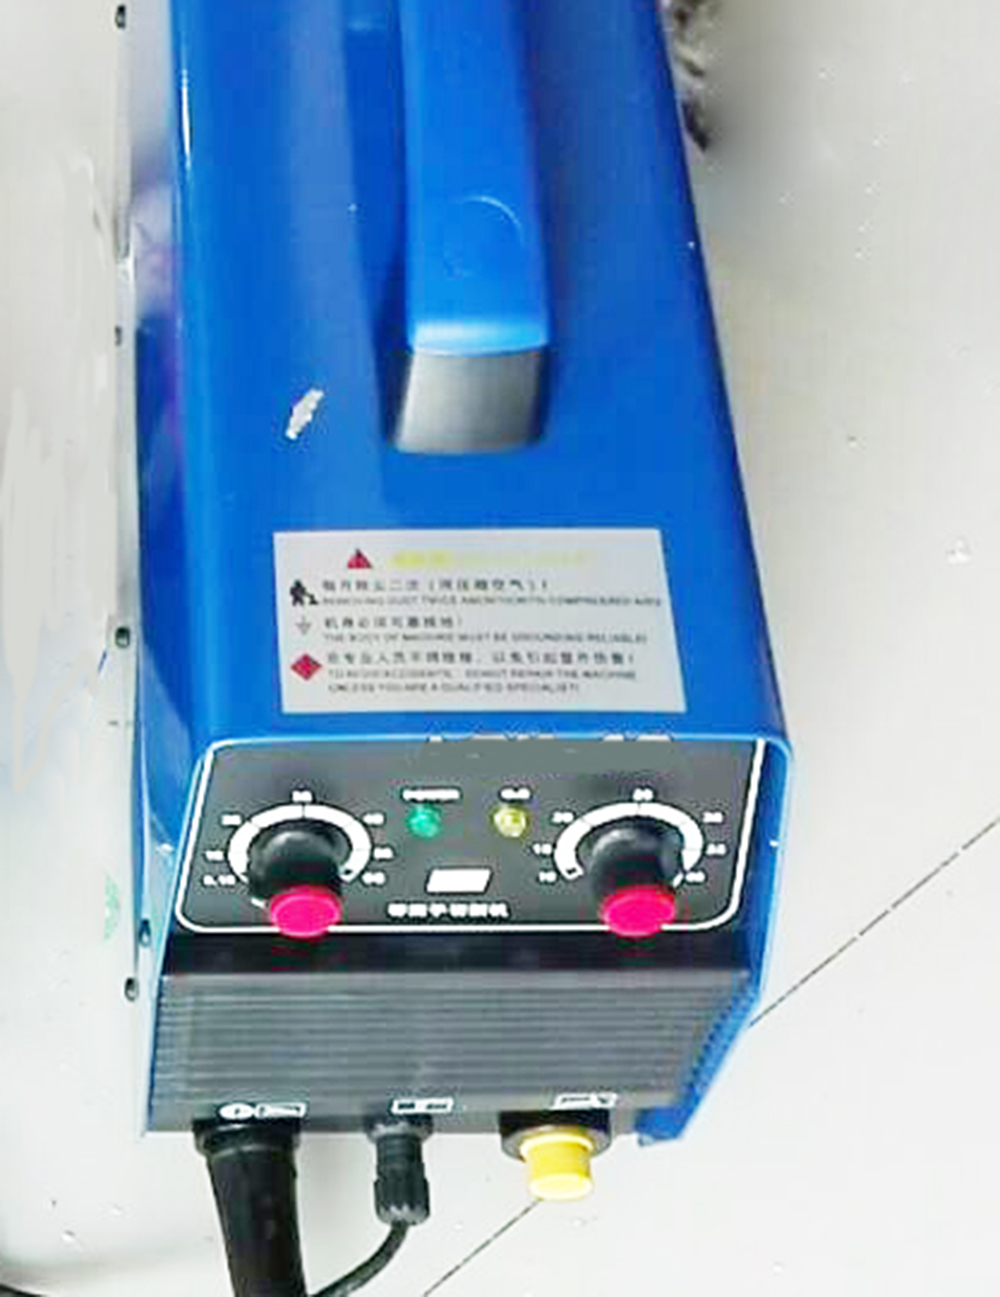 plasma cutter, plasma cutting machine, welder companion, Inverter DC